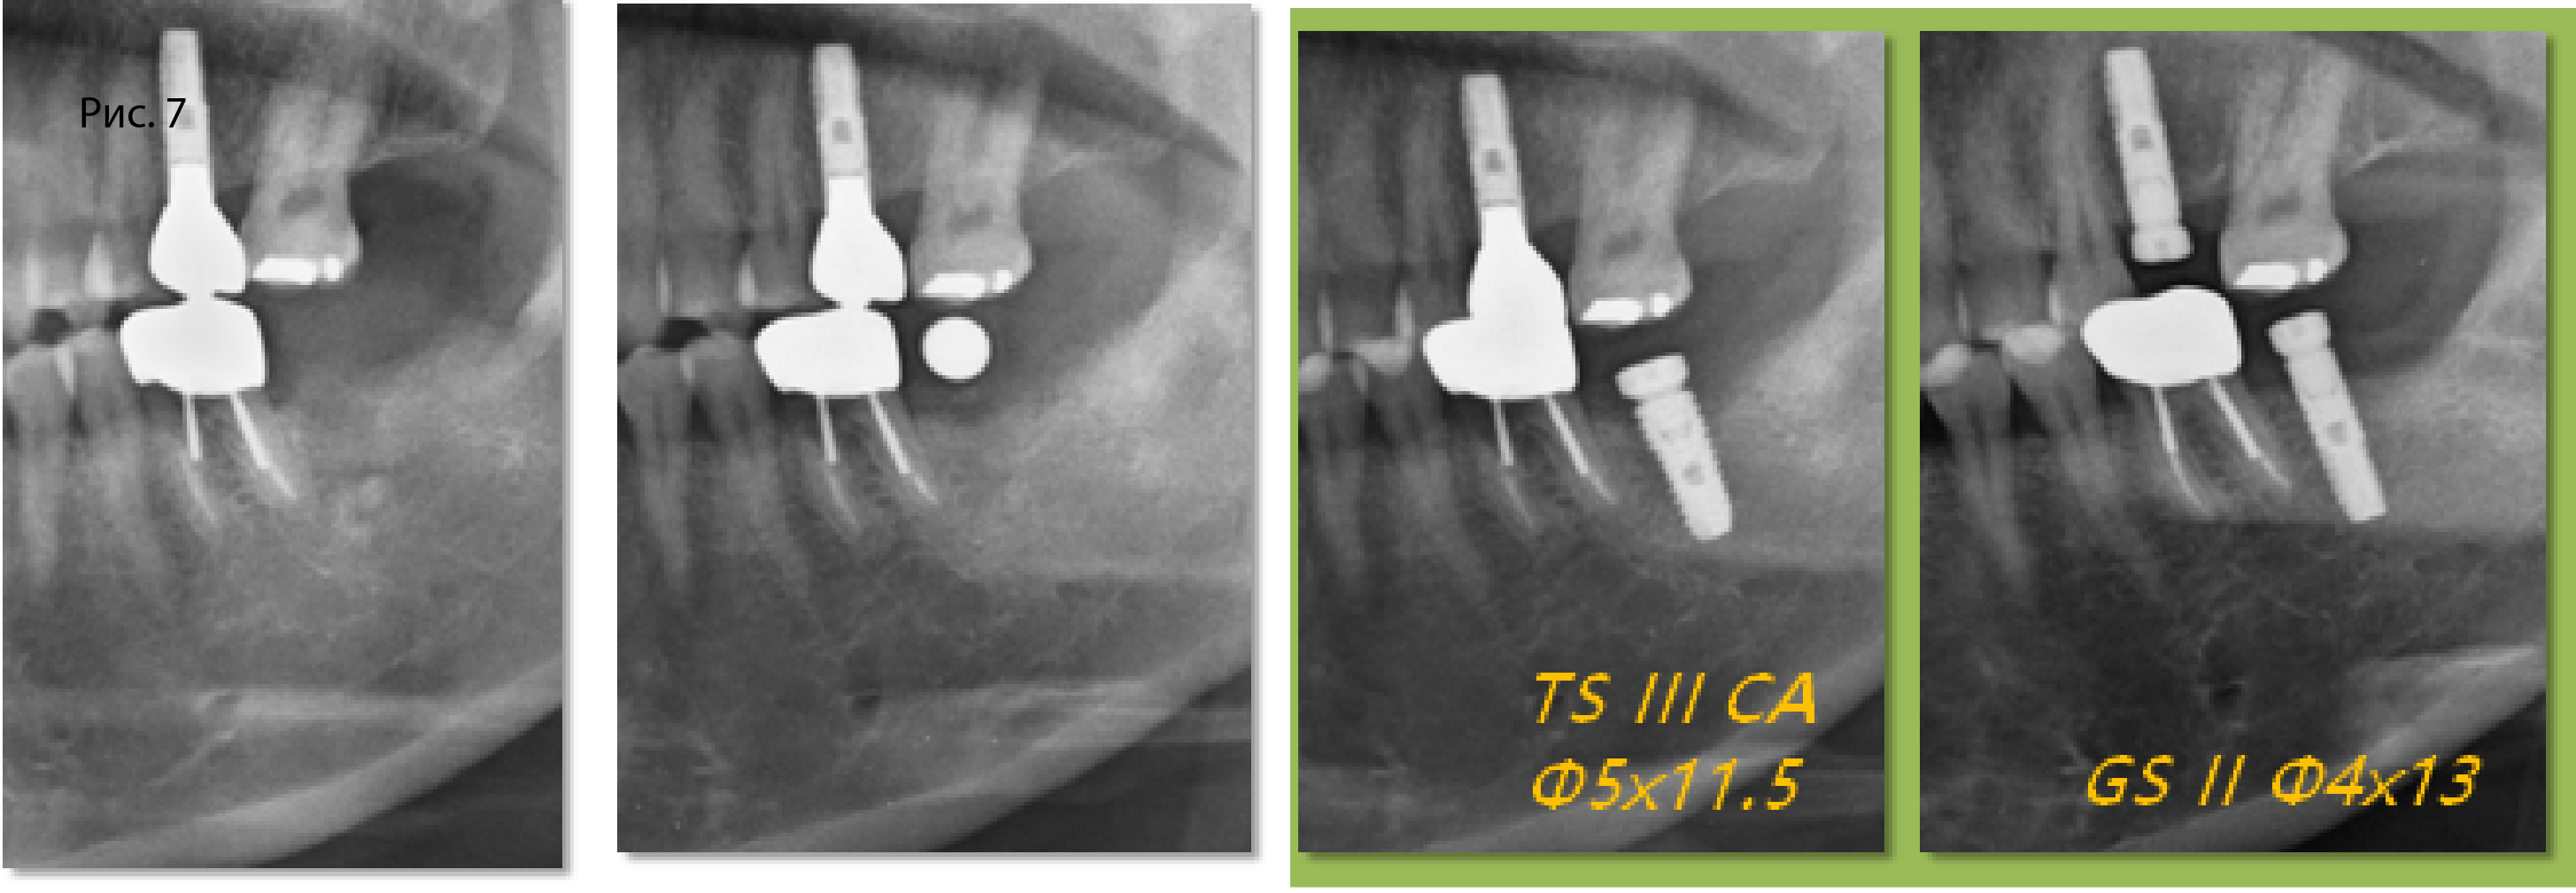 Рис. 7. В области зуба 37 на месте имплантата OSSTEM GS II 4 x 13 мм установили имплантат OSSTEM TS III CA 5 x 11,5 мм 